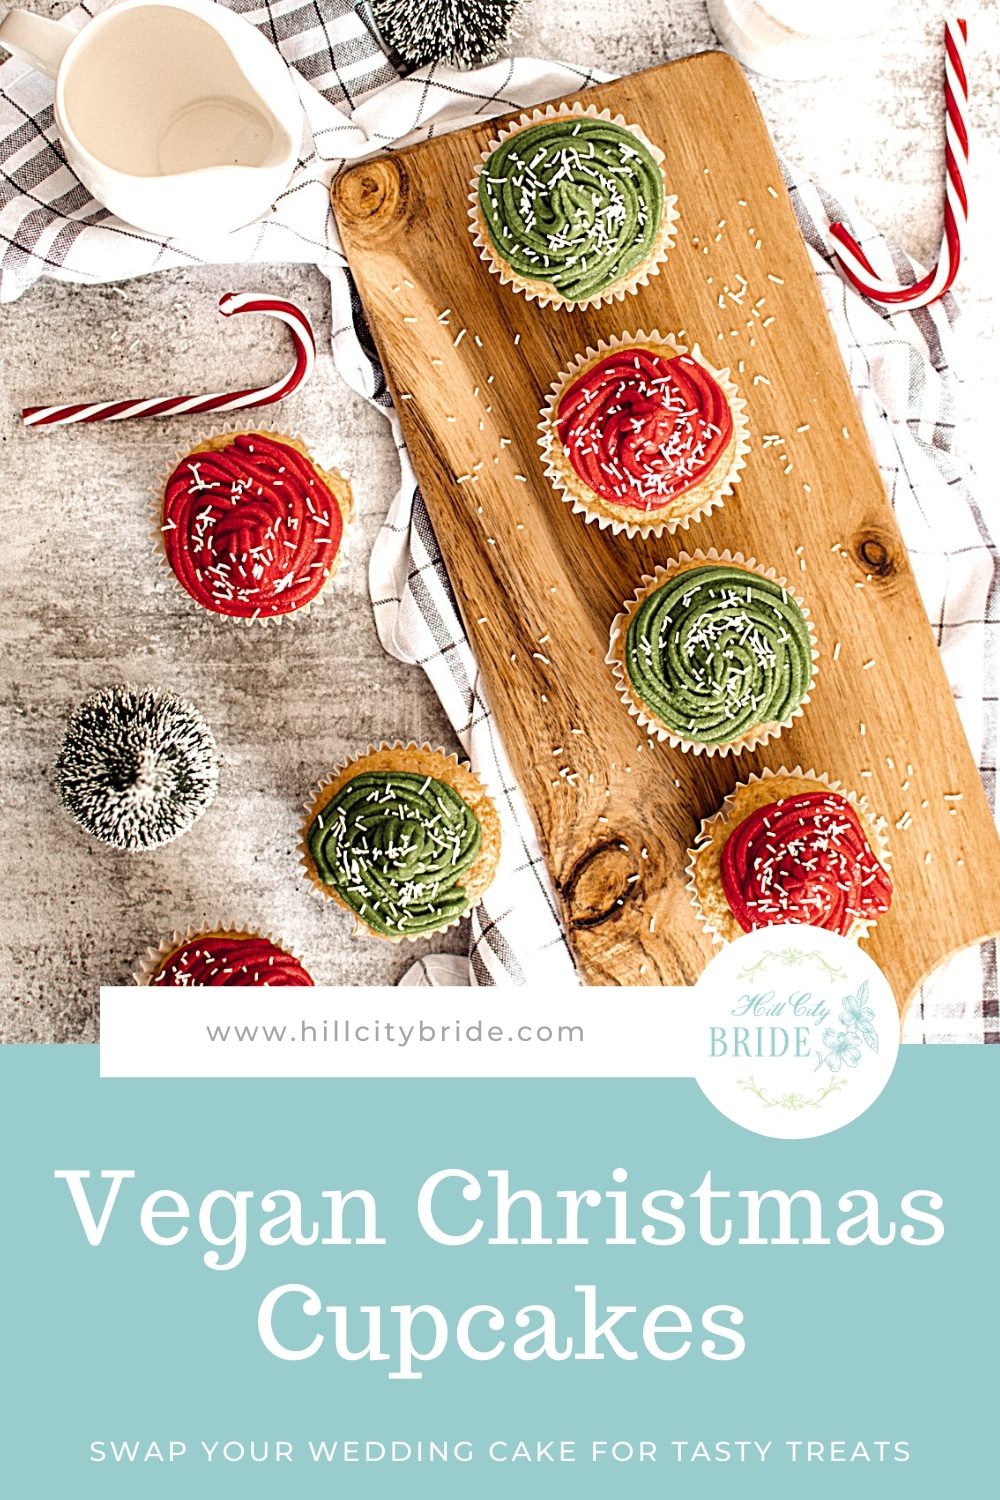 Festive Vegan Cupcake Recipe for Christmas